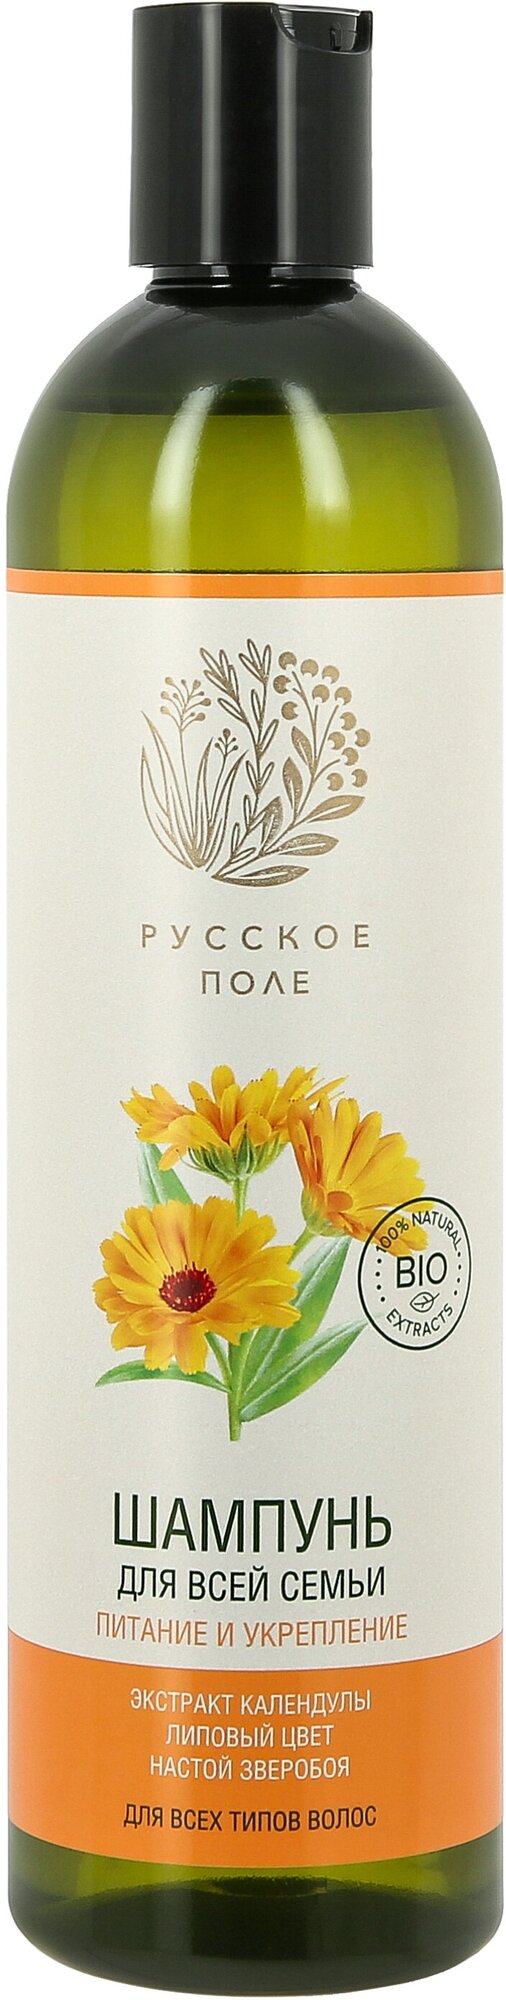 Русское Поле шампунь для волос любого типа для всей семьи "Питание и укрепление", 400 мл.